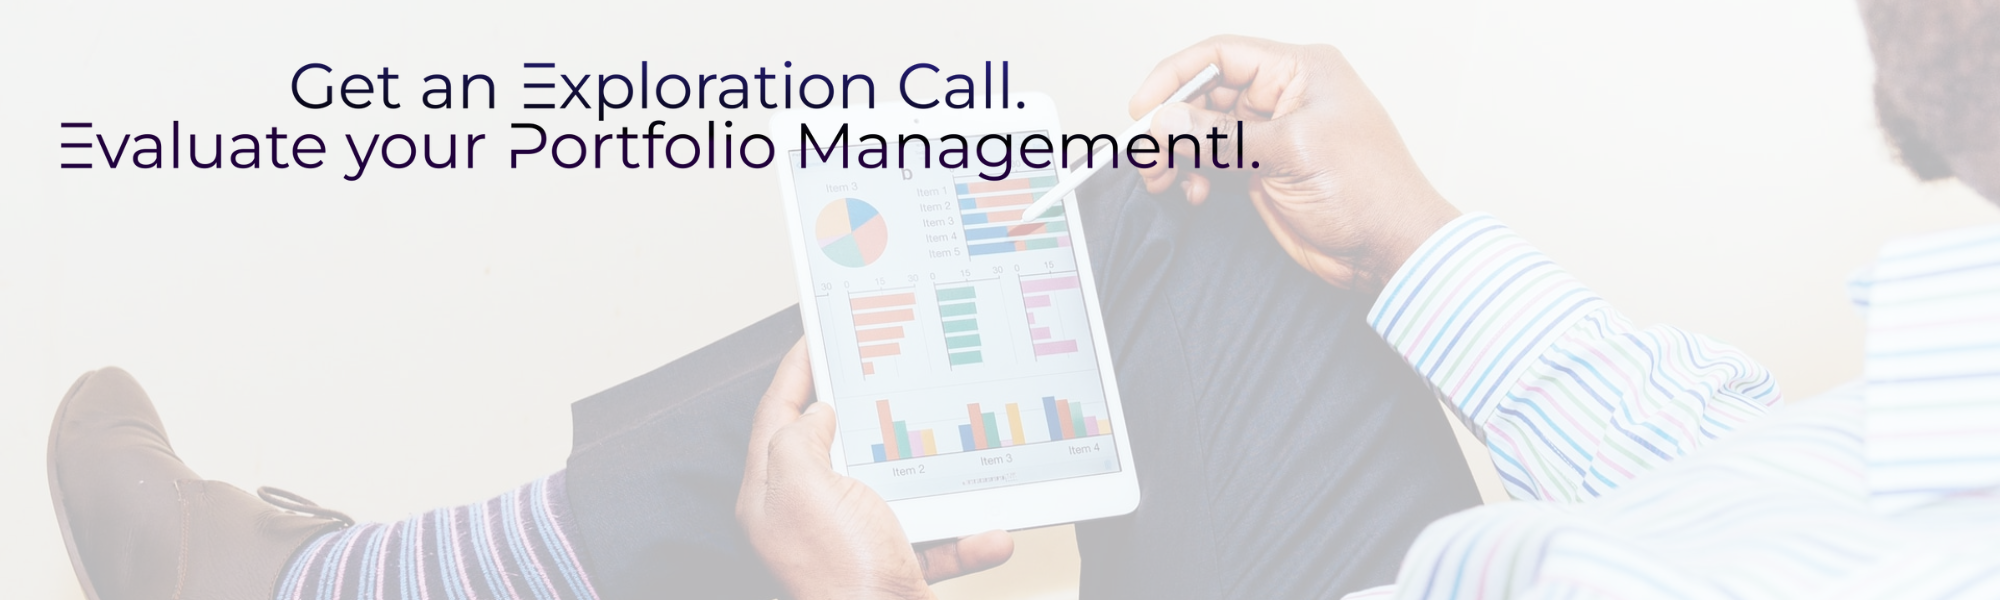 Portfolio Management-Exploration Call